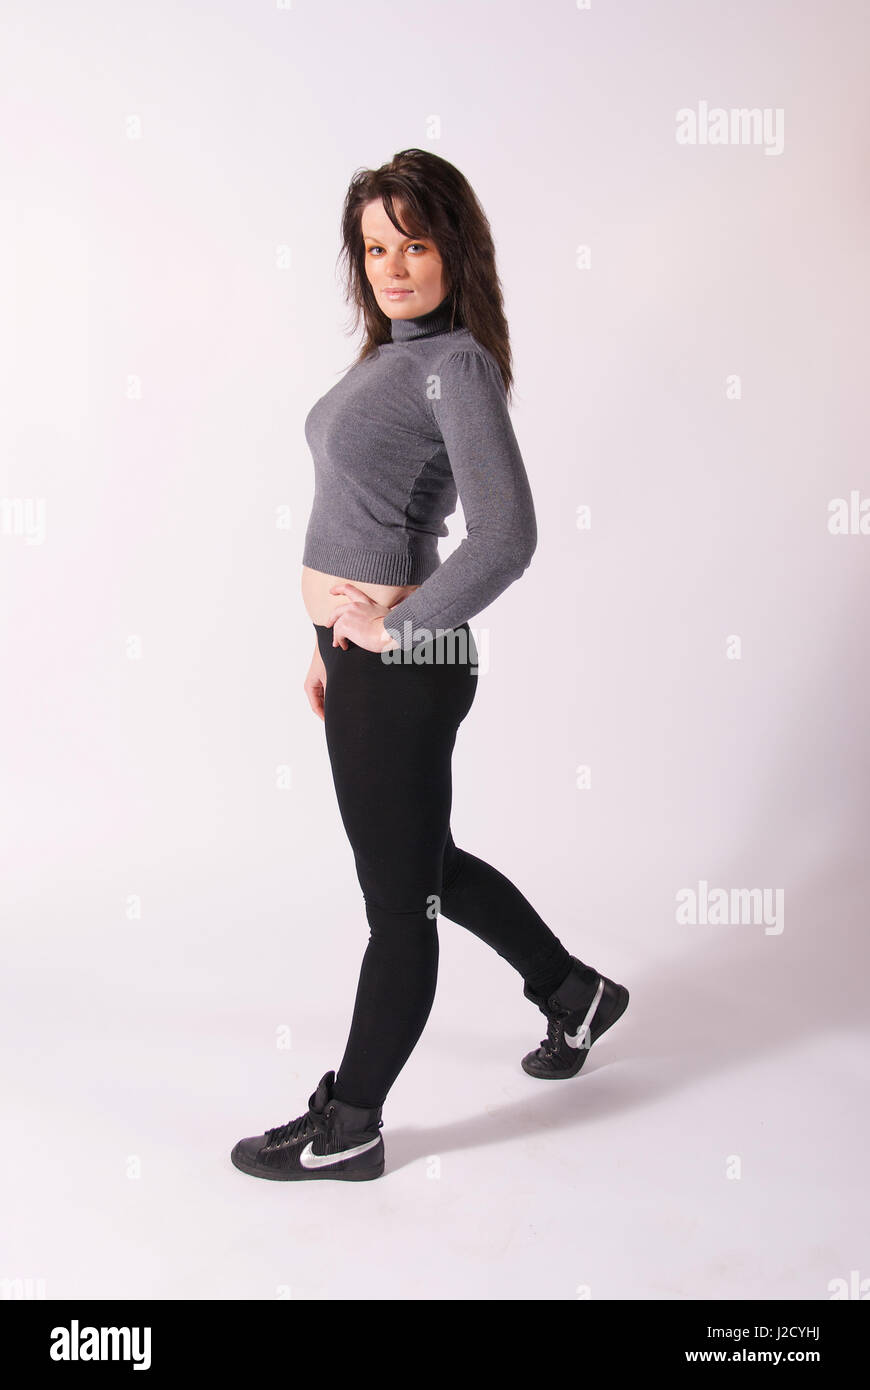 Fotografia do Stock: Beautiful brunette girl in black leggings and